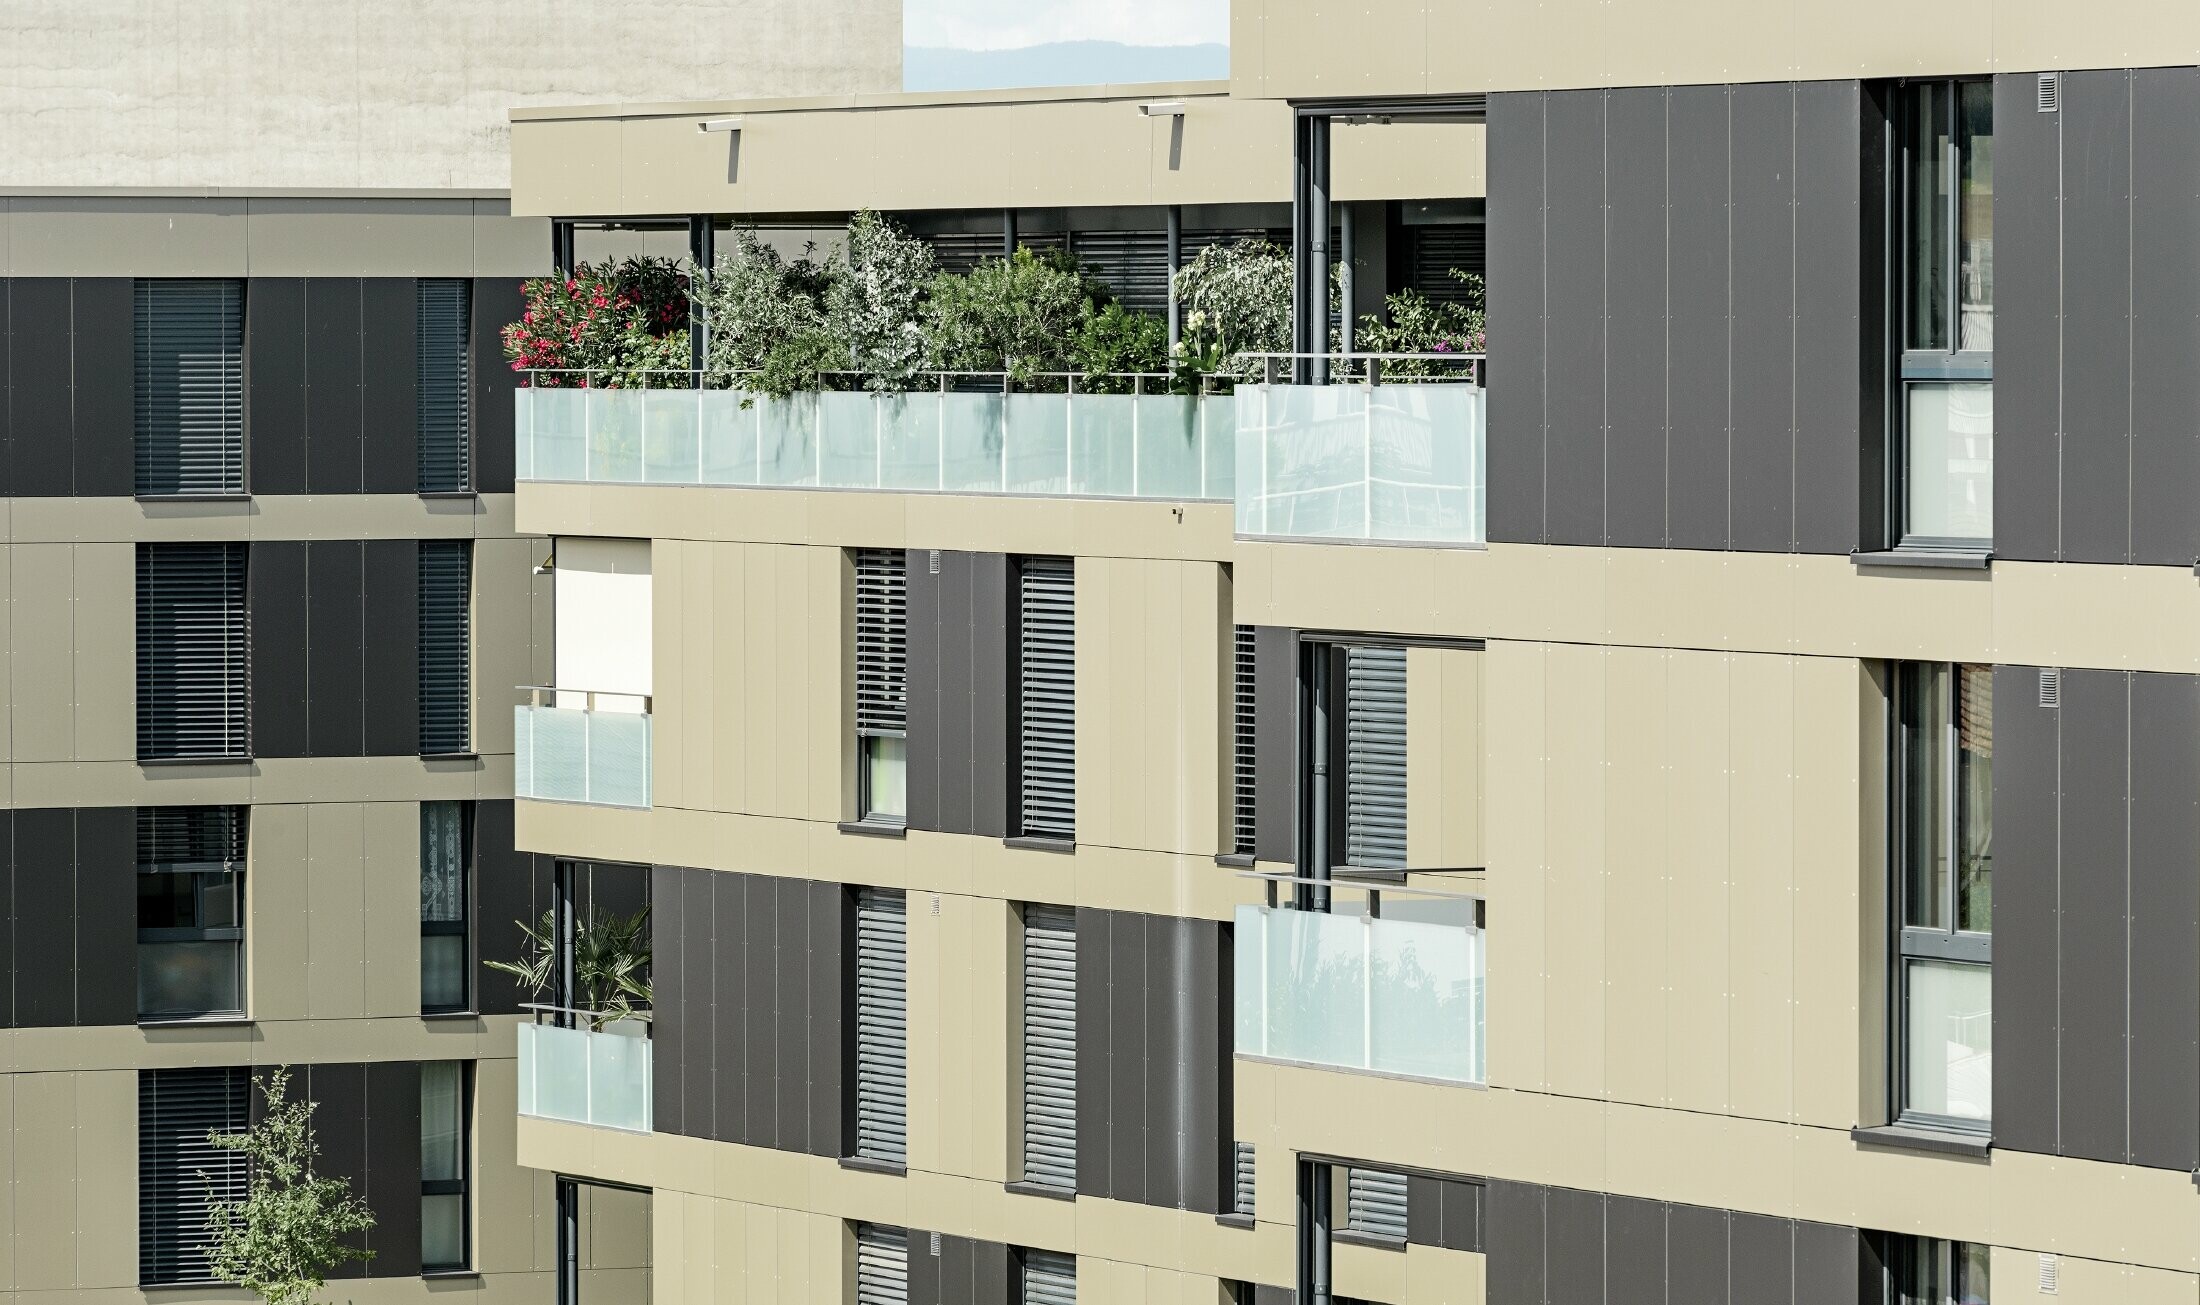 Kockast stanovanjski kompleks z aluminijasto fasado v bronasti barvi in črno-zelenimi elementi